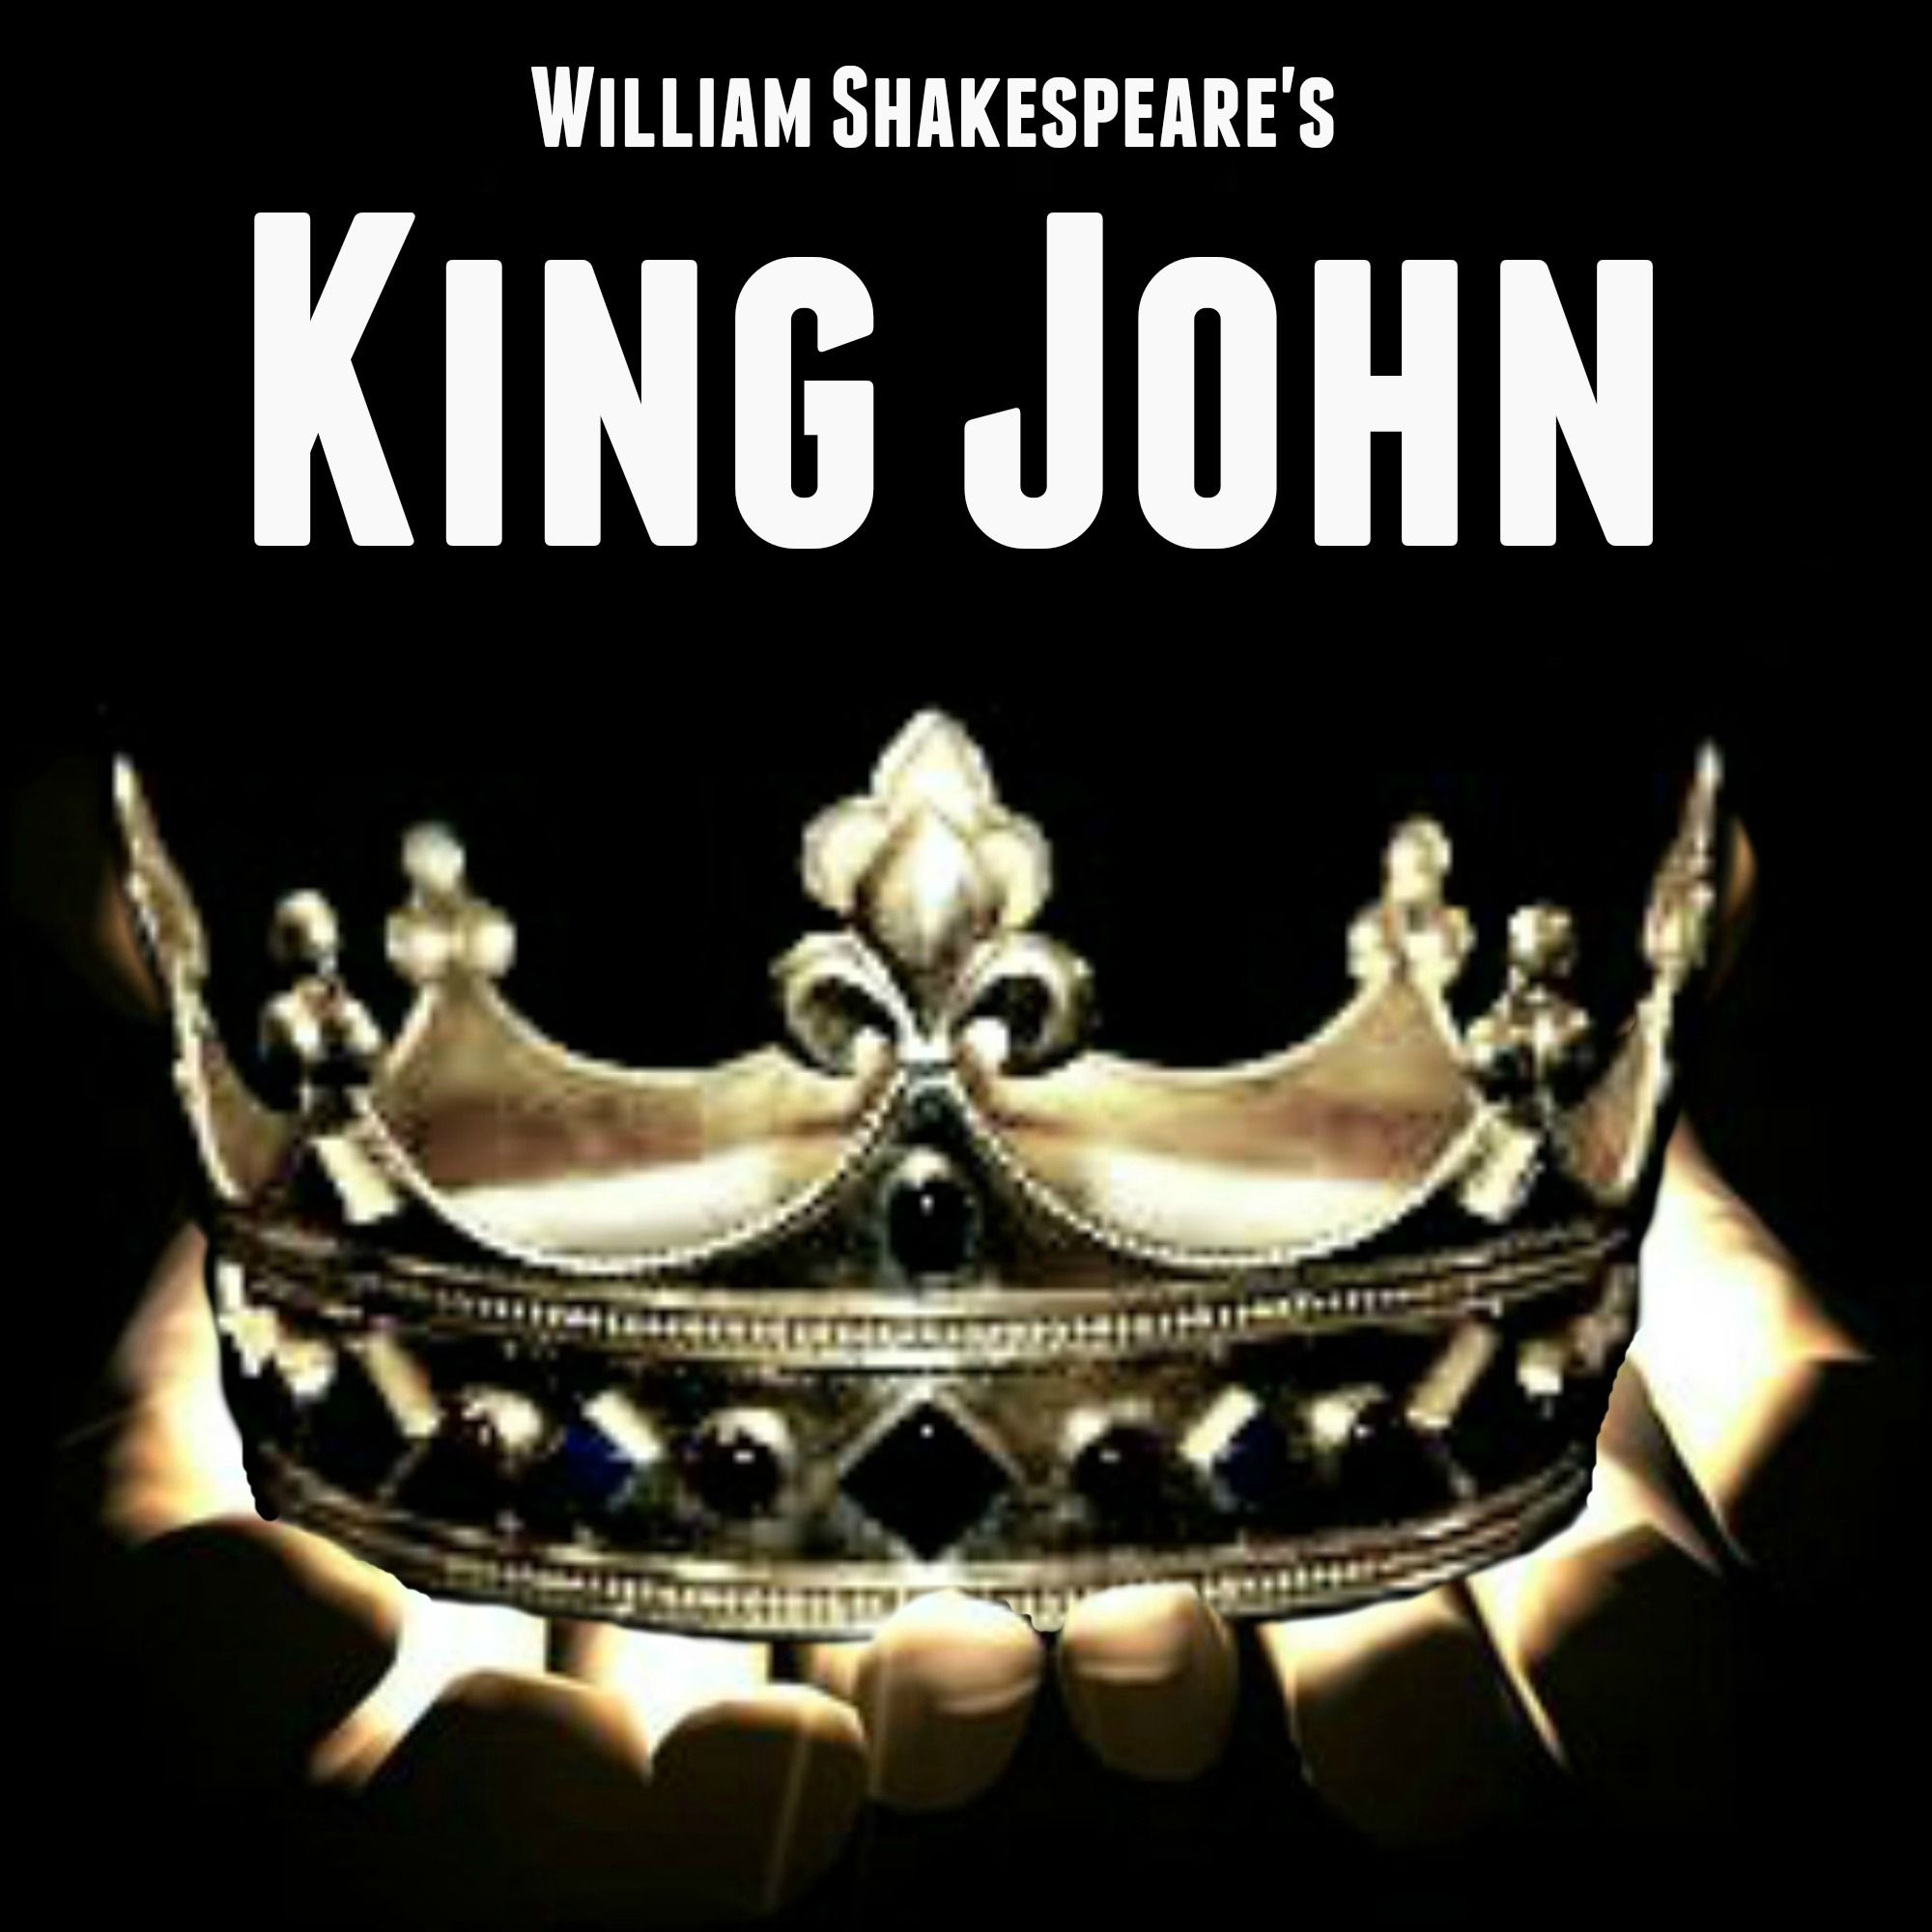 King John graphic.jpg